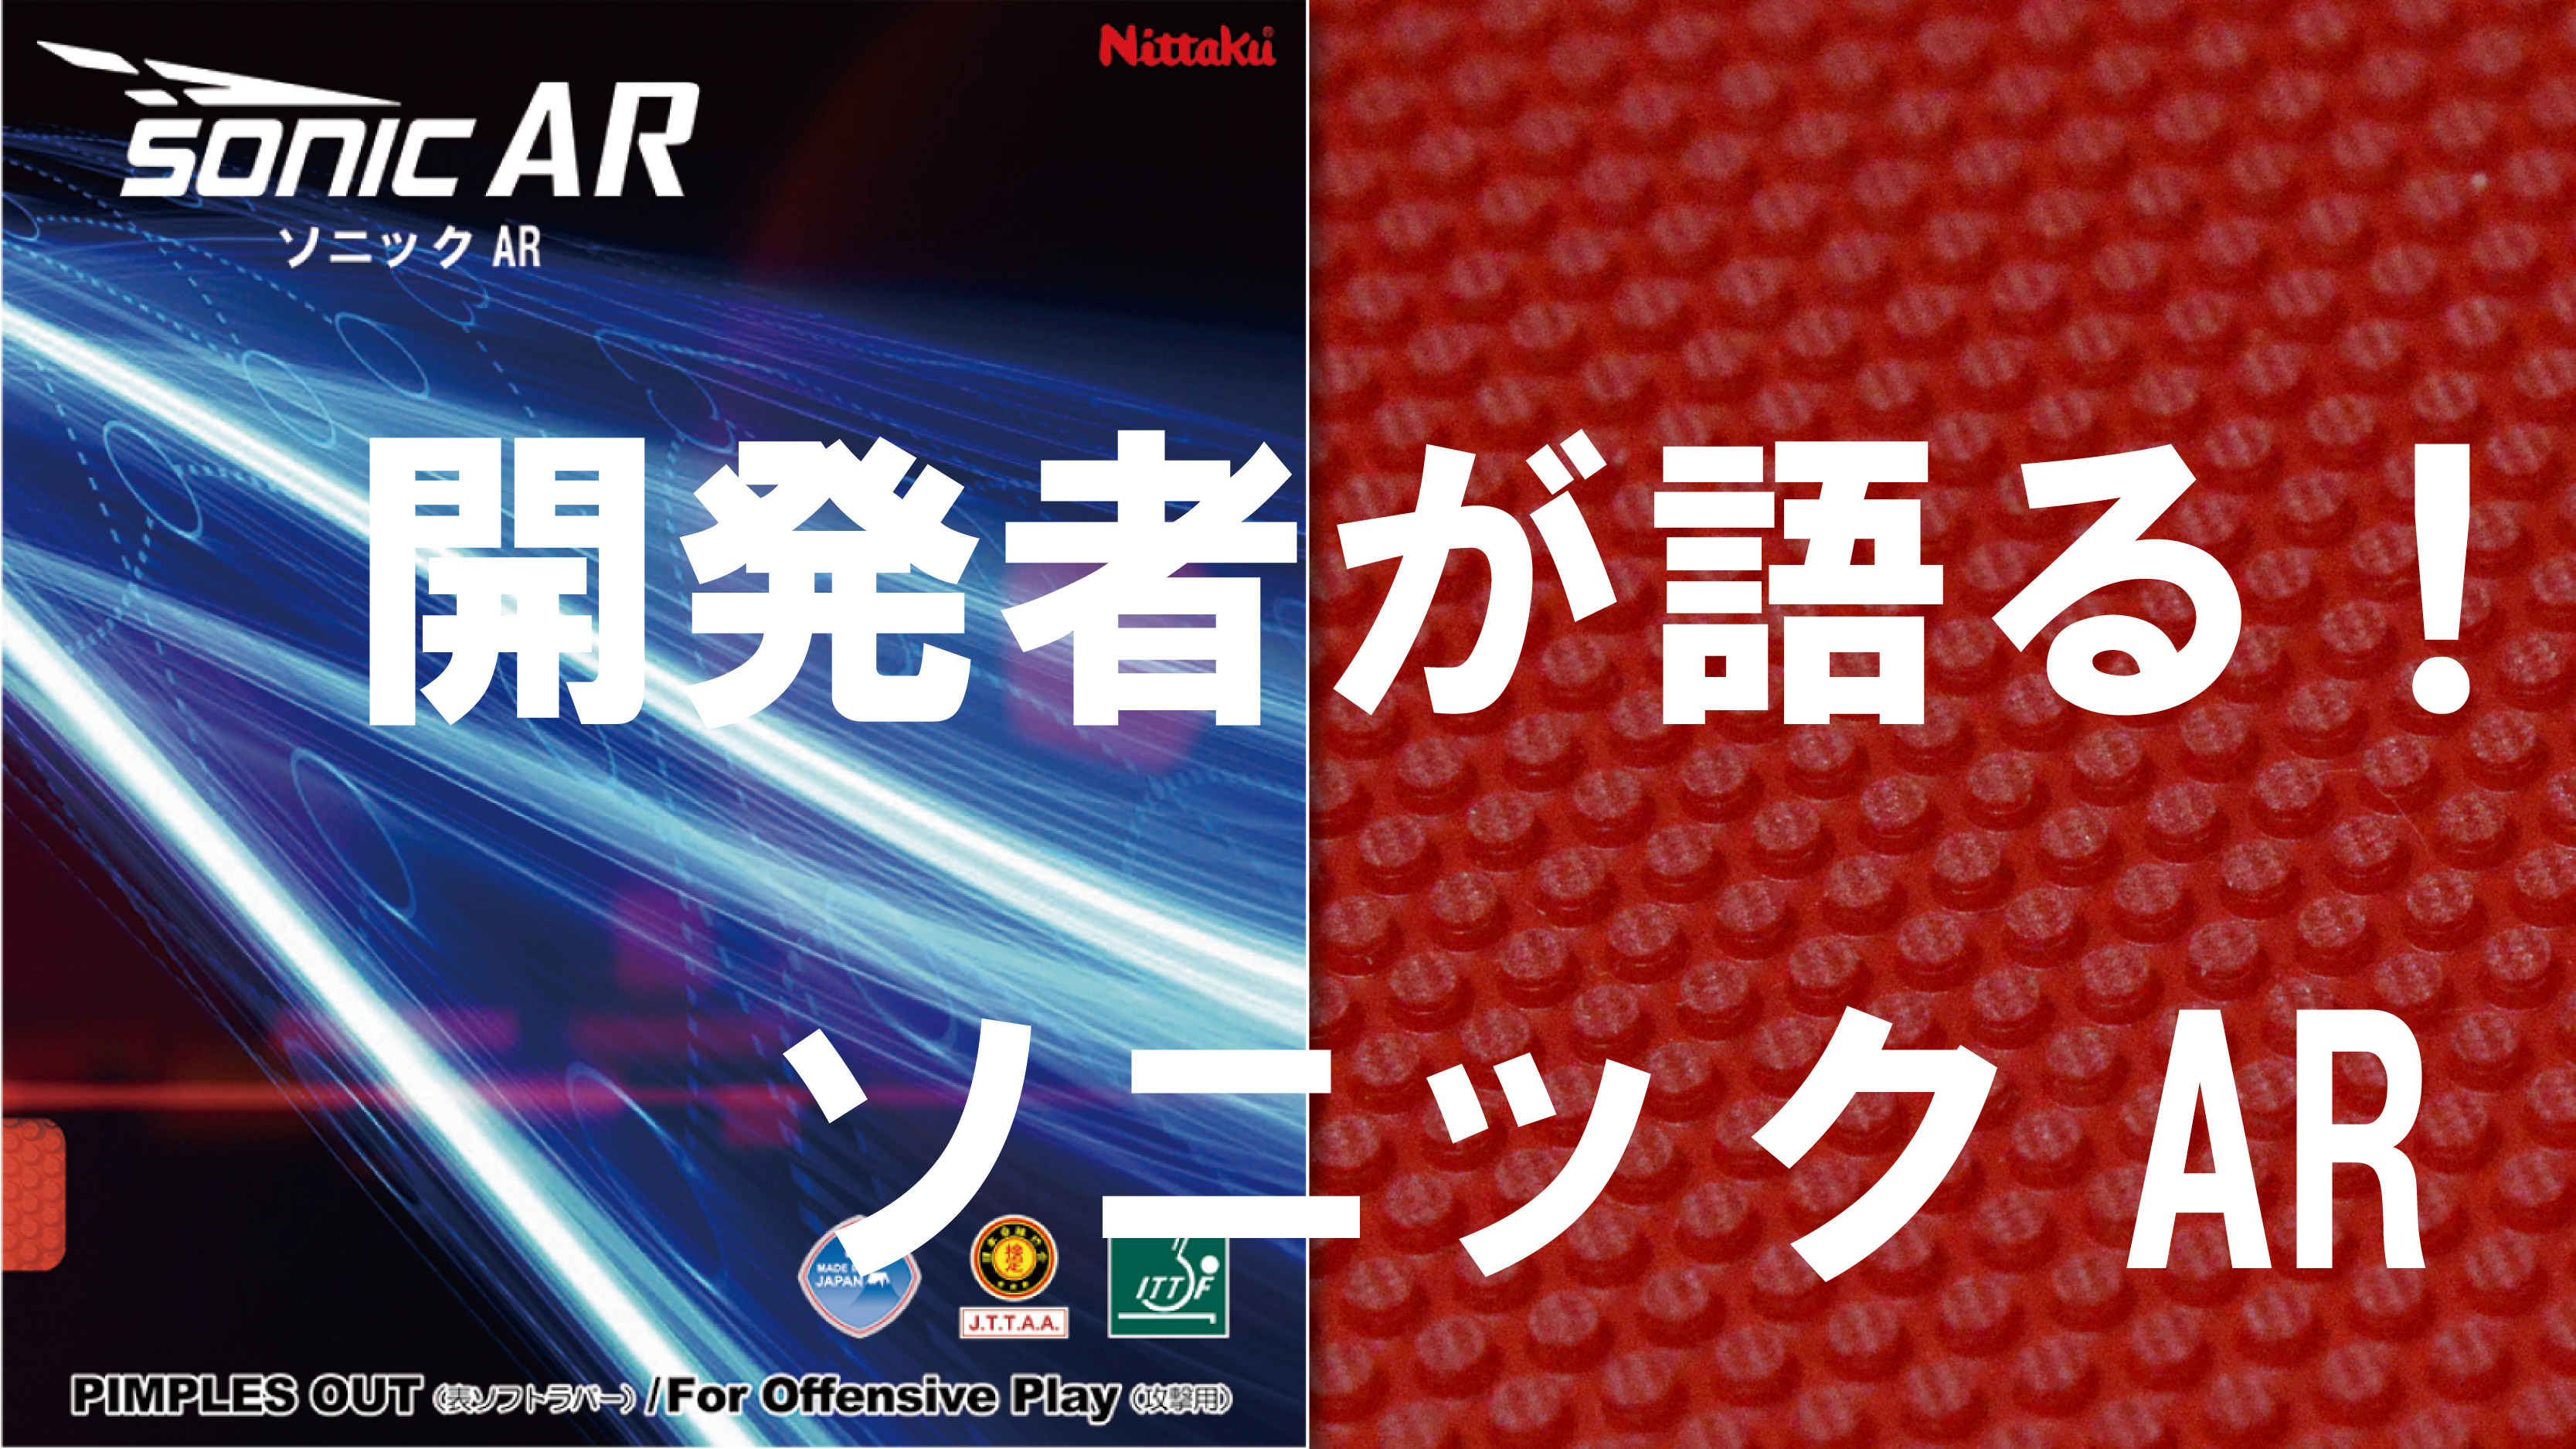 打って打って打ちまくれ！開発者が語る表ソフトラバー「ソニックAR」 | Nittaku(ニッタク) 日本卓球 | 卓球用品の総合用具メーカー Nittaku(ニッタク) 日本卓球株式会社の公式ホームページ